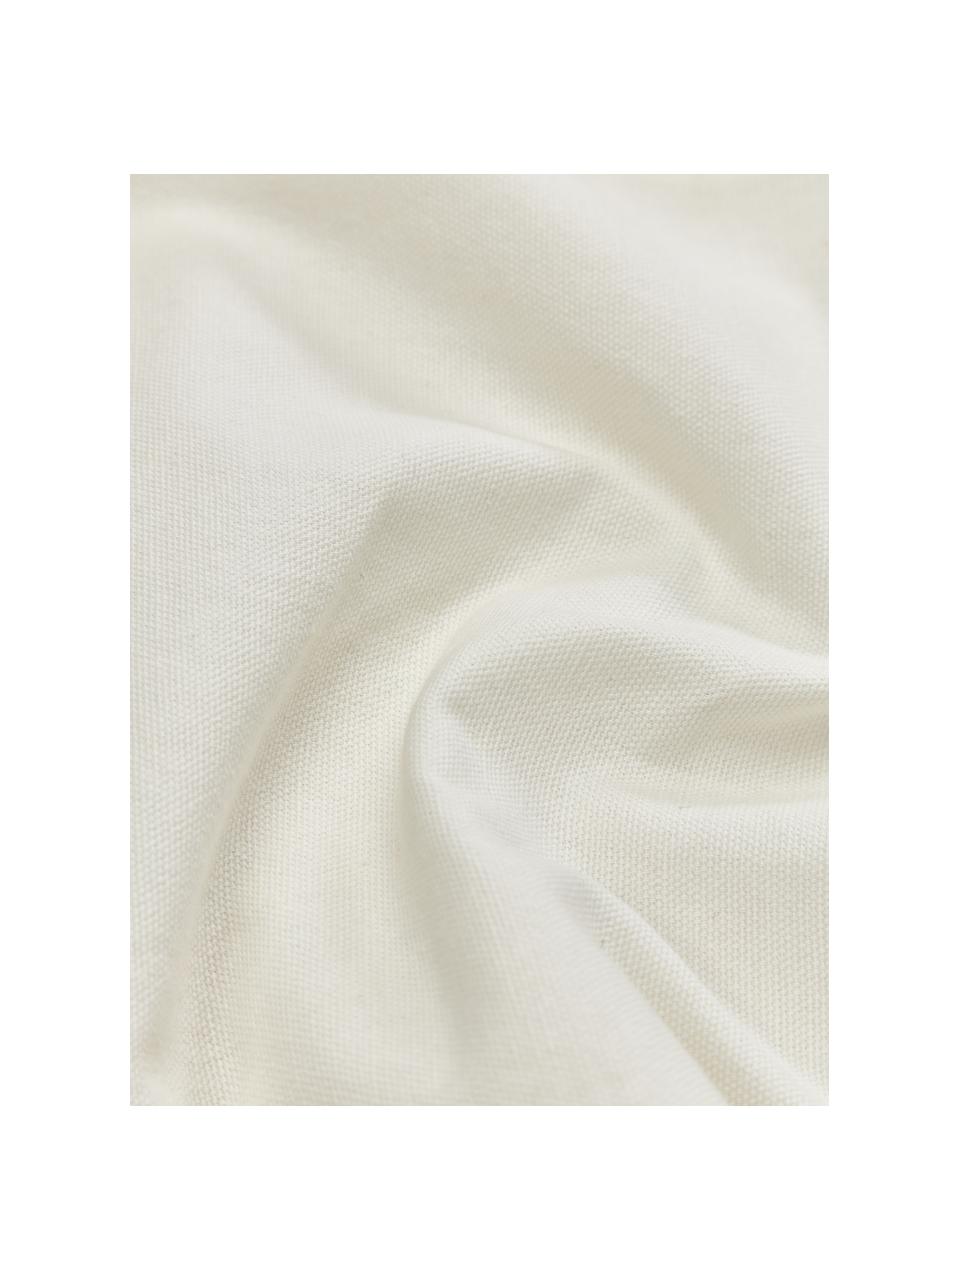 Federa arredo in cotone ricamato con struttura alta-bassa Izad, Rivestimento: 100% cotone Ornamento, Marrone, nero, bianco crema, Larg. 45 x Lung. 45 cm